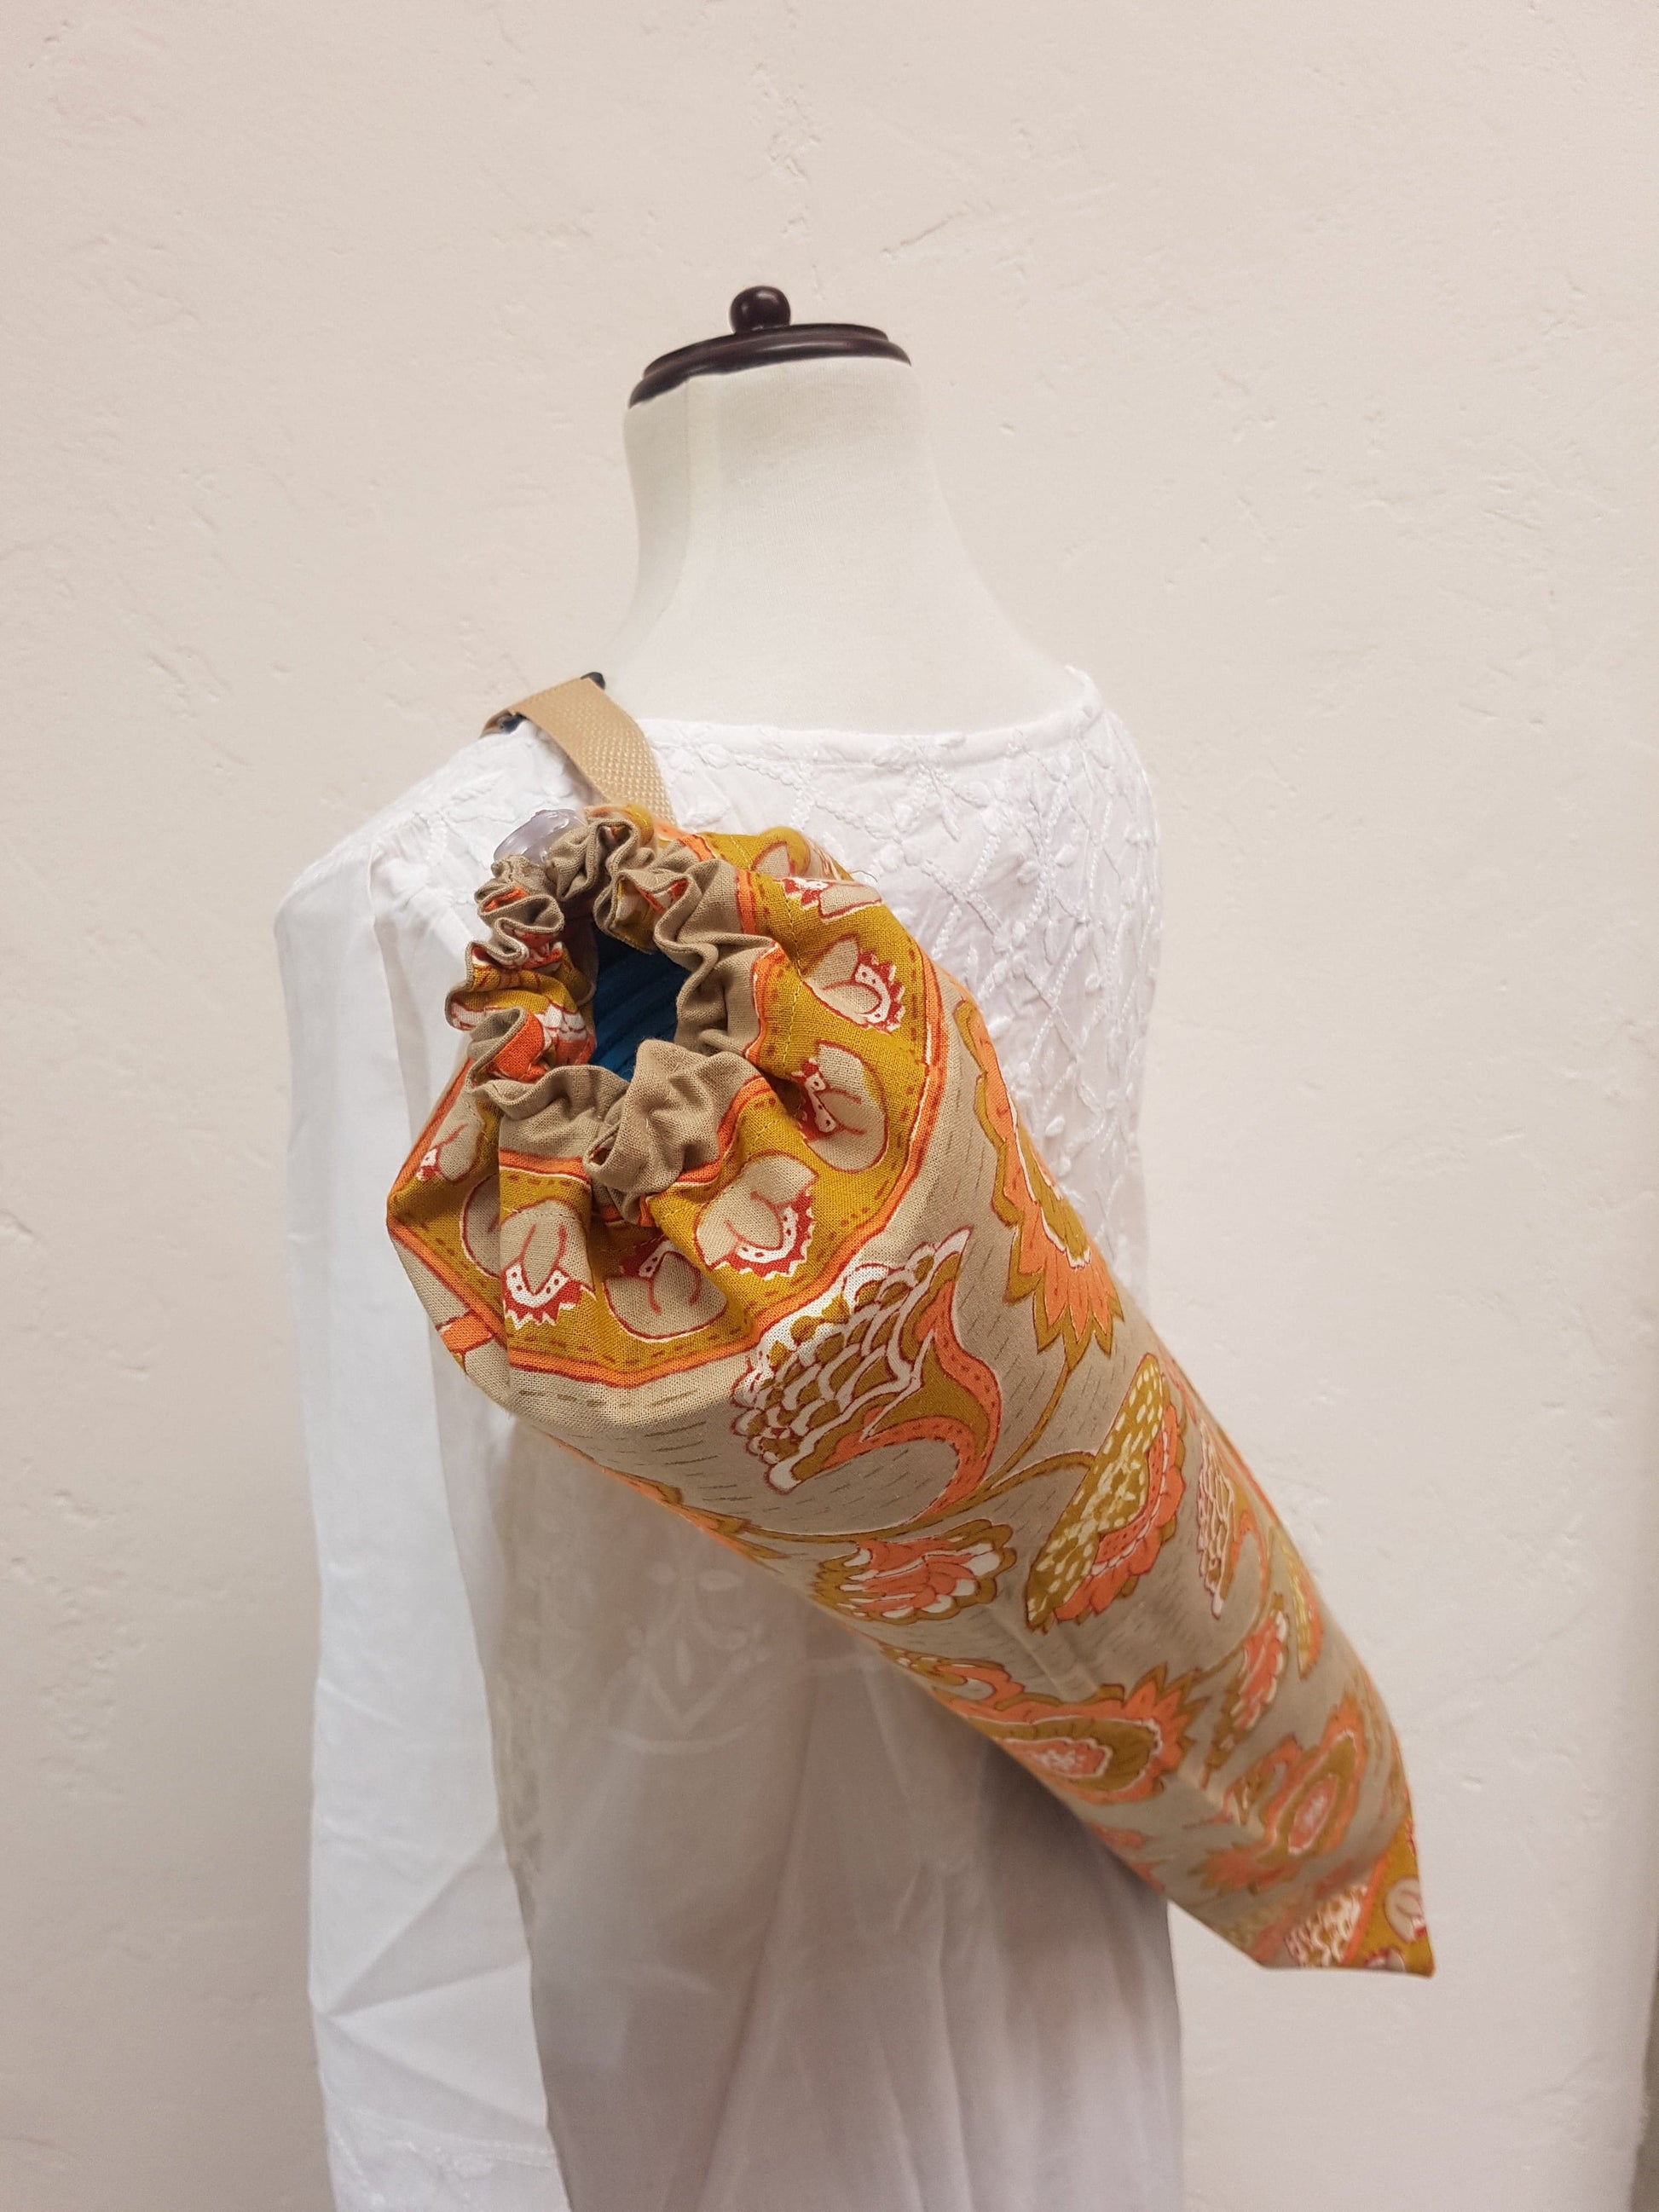 Detalle de jareta en funda para tapete de yoga 100% algodón, estampada a mano beige con flores naranjas. Hecha en la India.